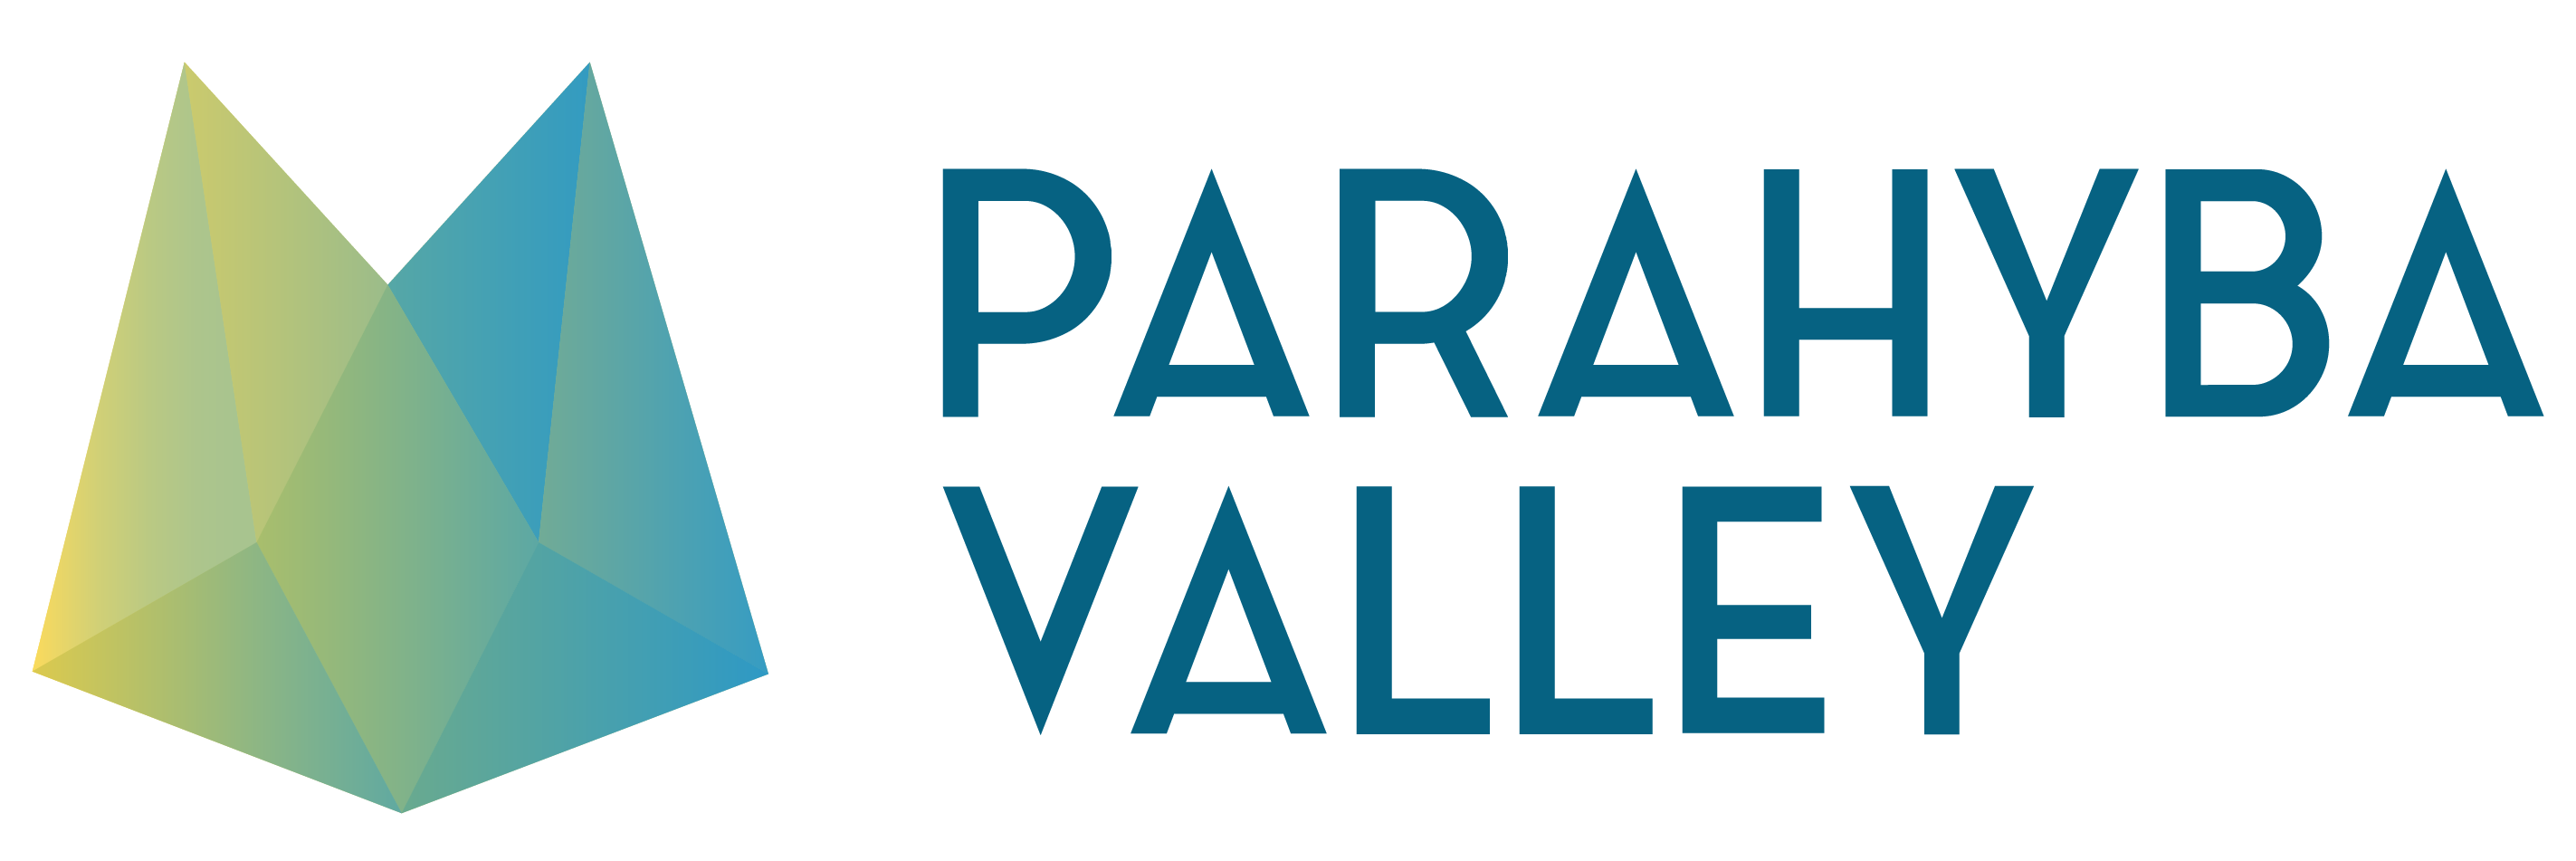 Parahyba Valley logo